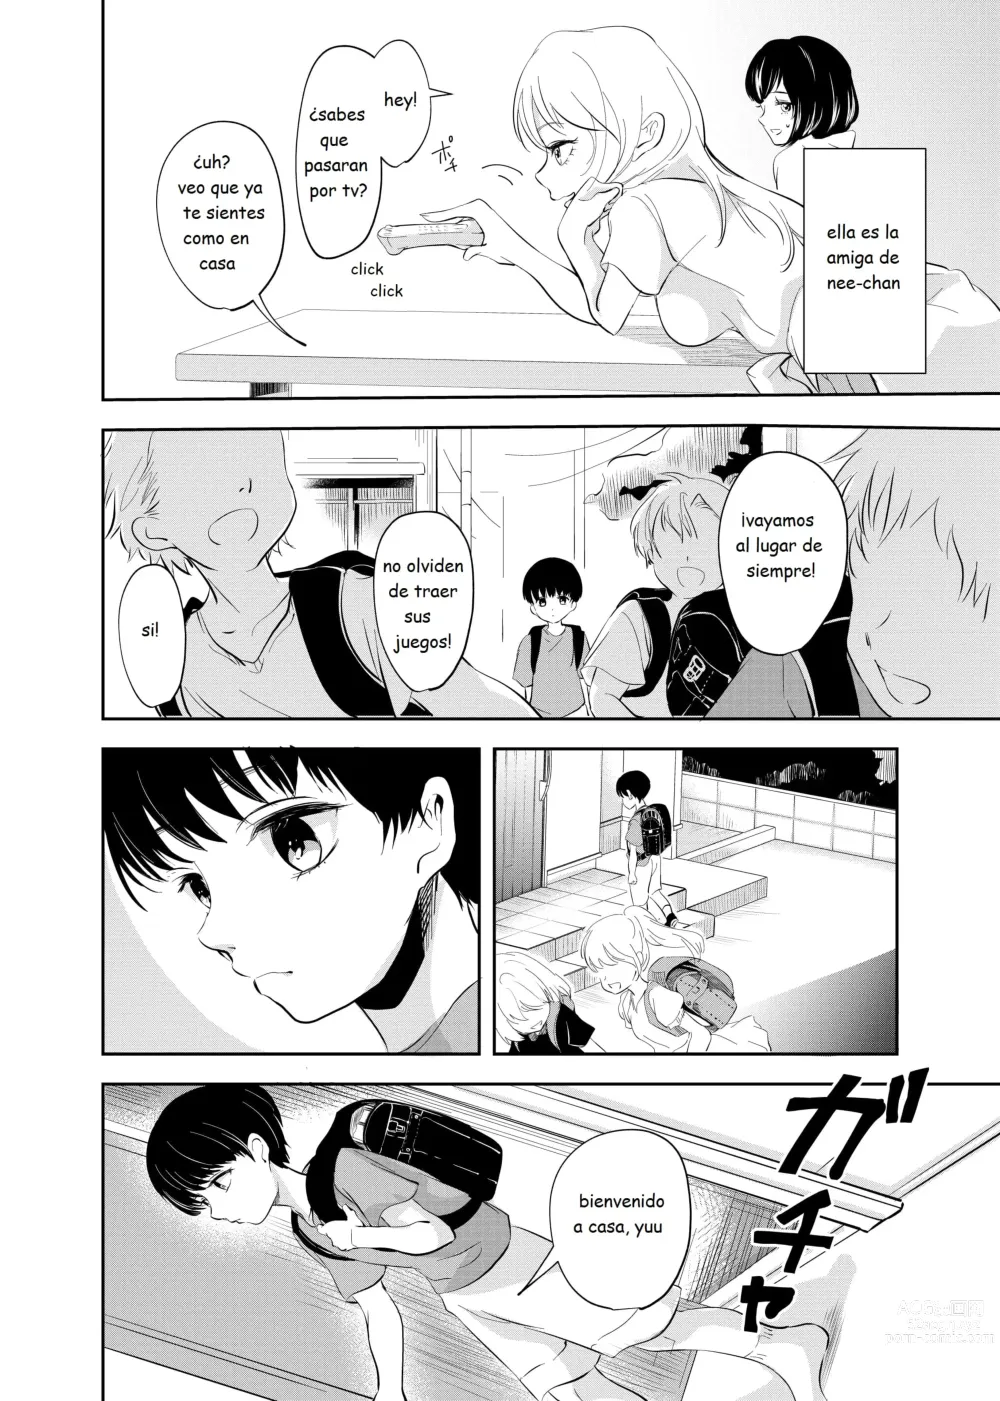 Page 3 of doujinshi Despues de la escuela